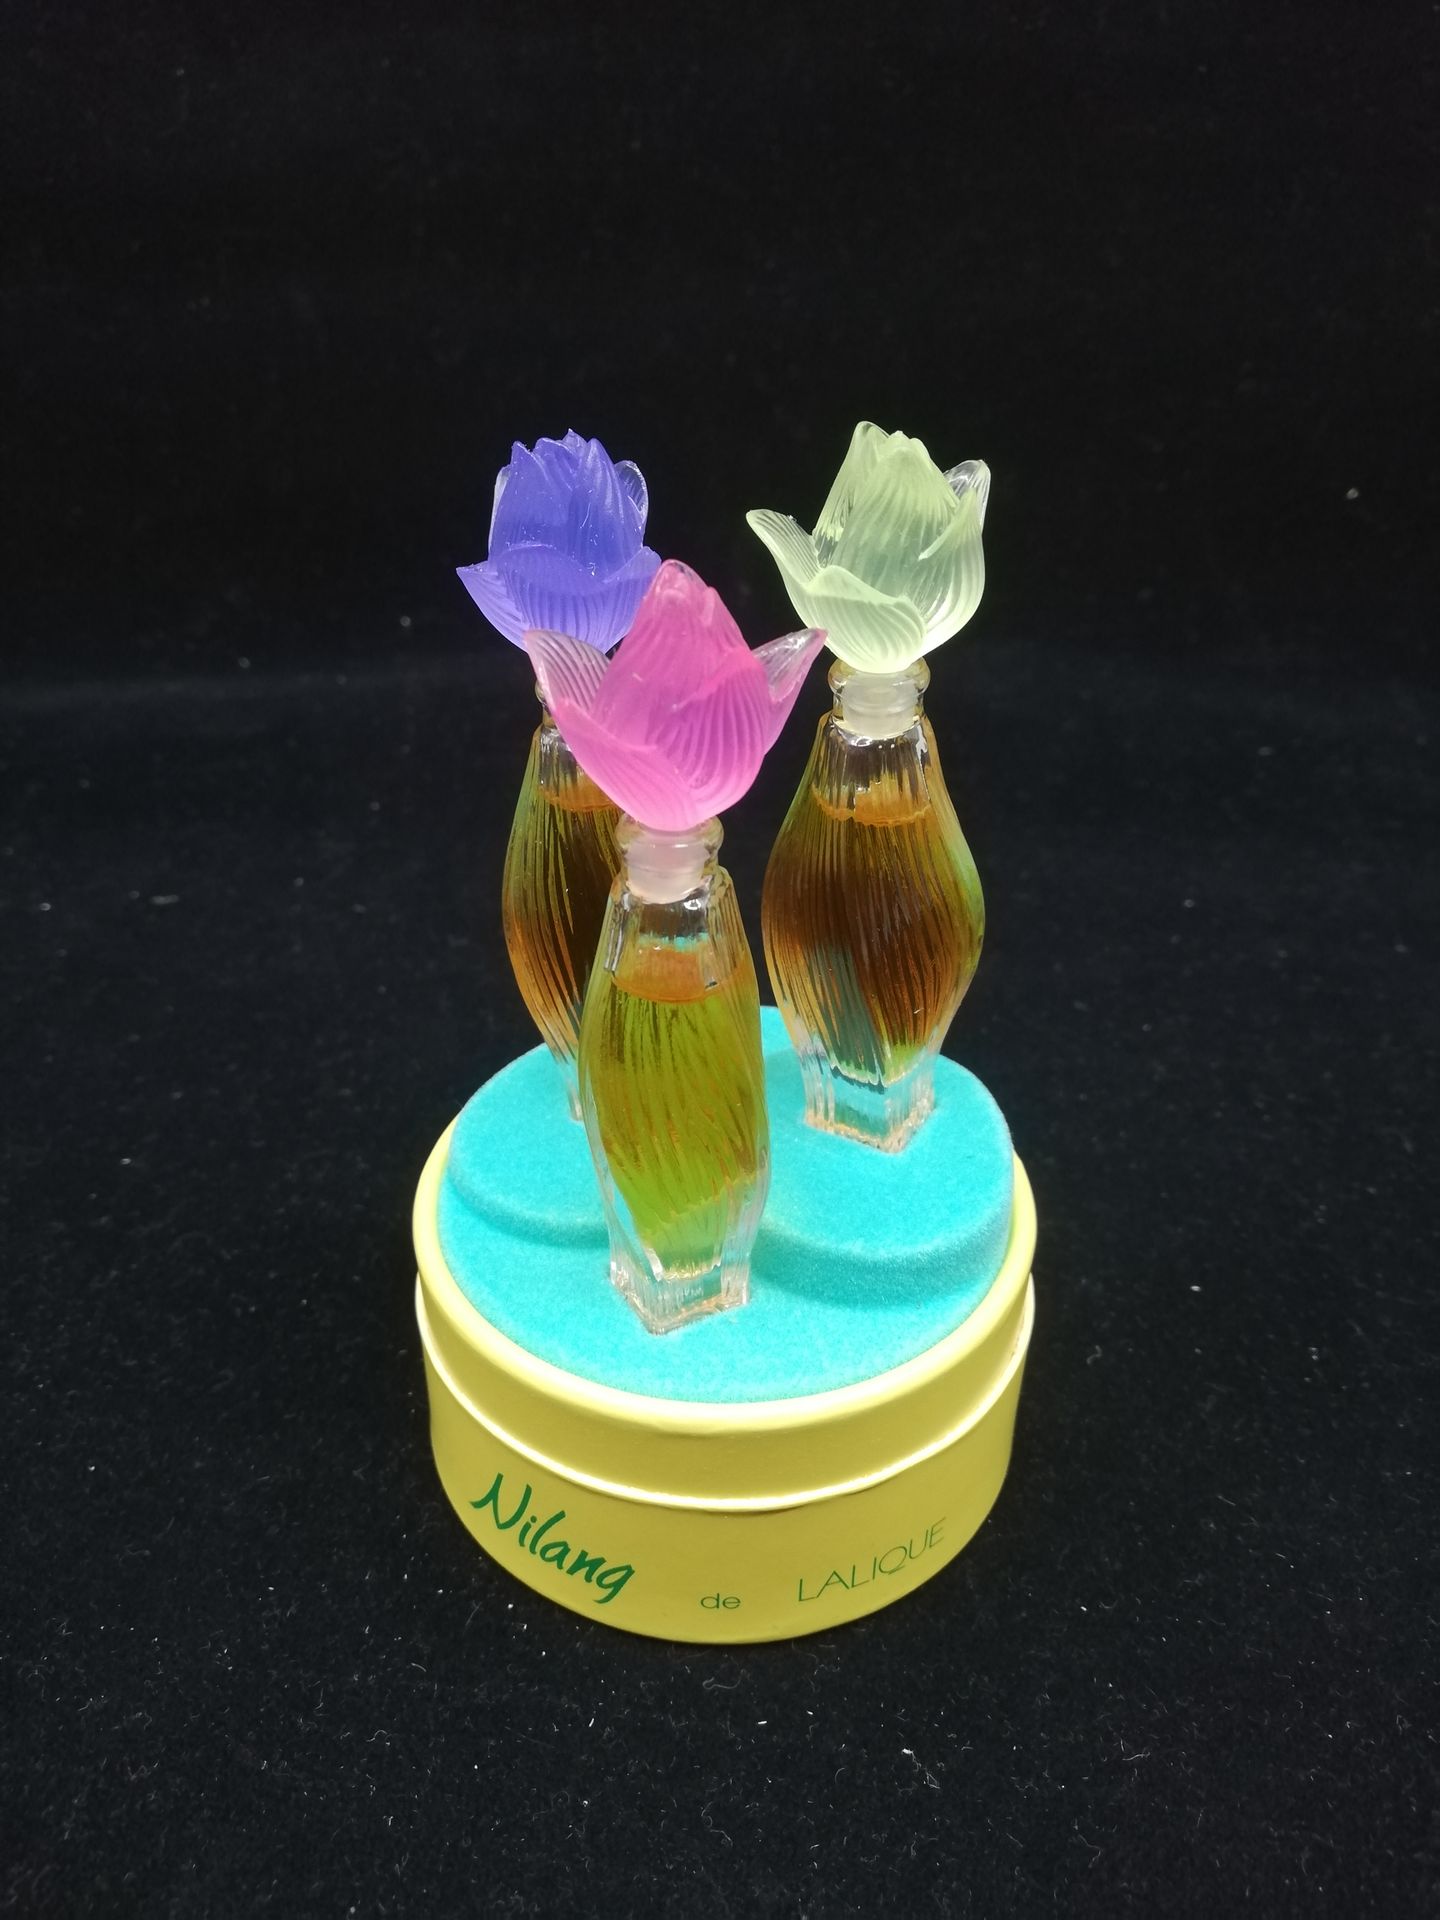 Null 莱利克香水 - "Nilang" - (1990年代)

一套三件无色玻璃香水，带着色的树脂花塞。